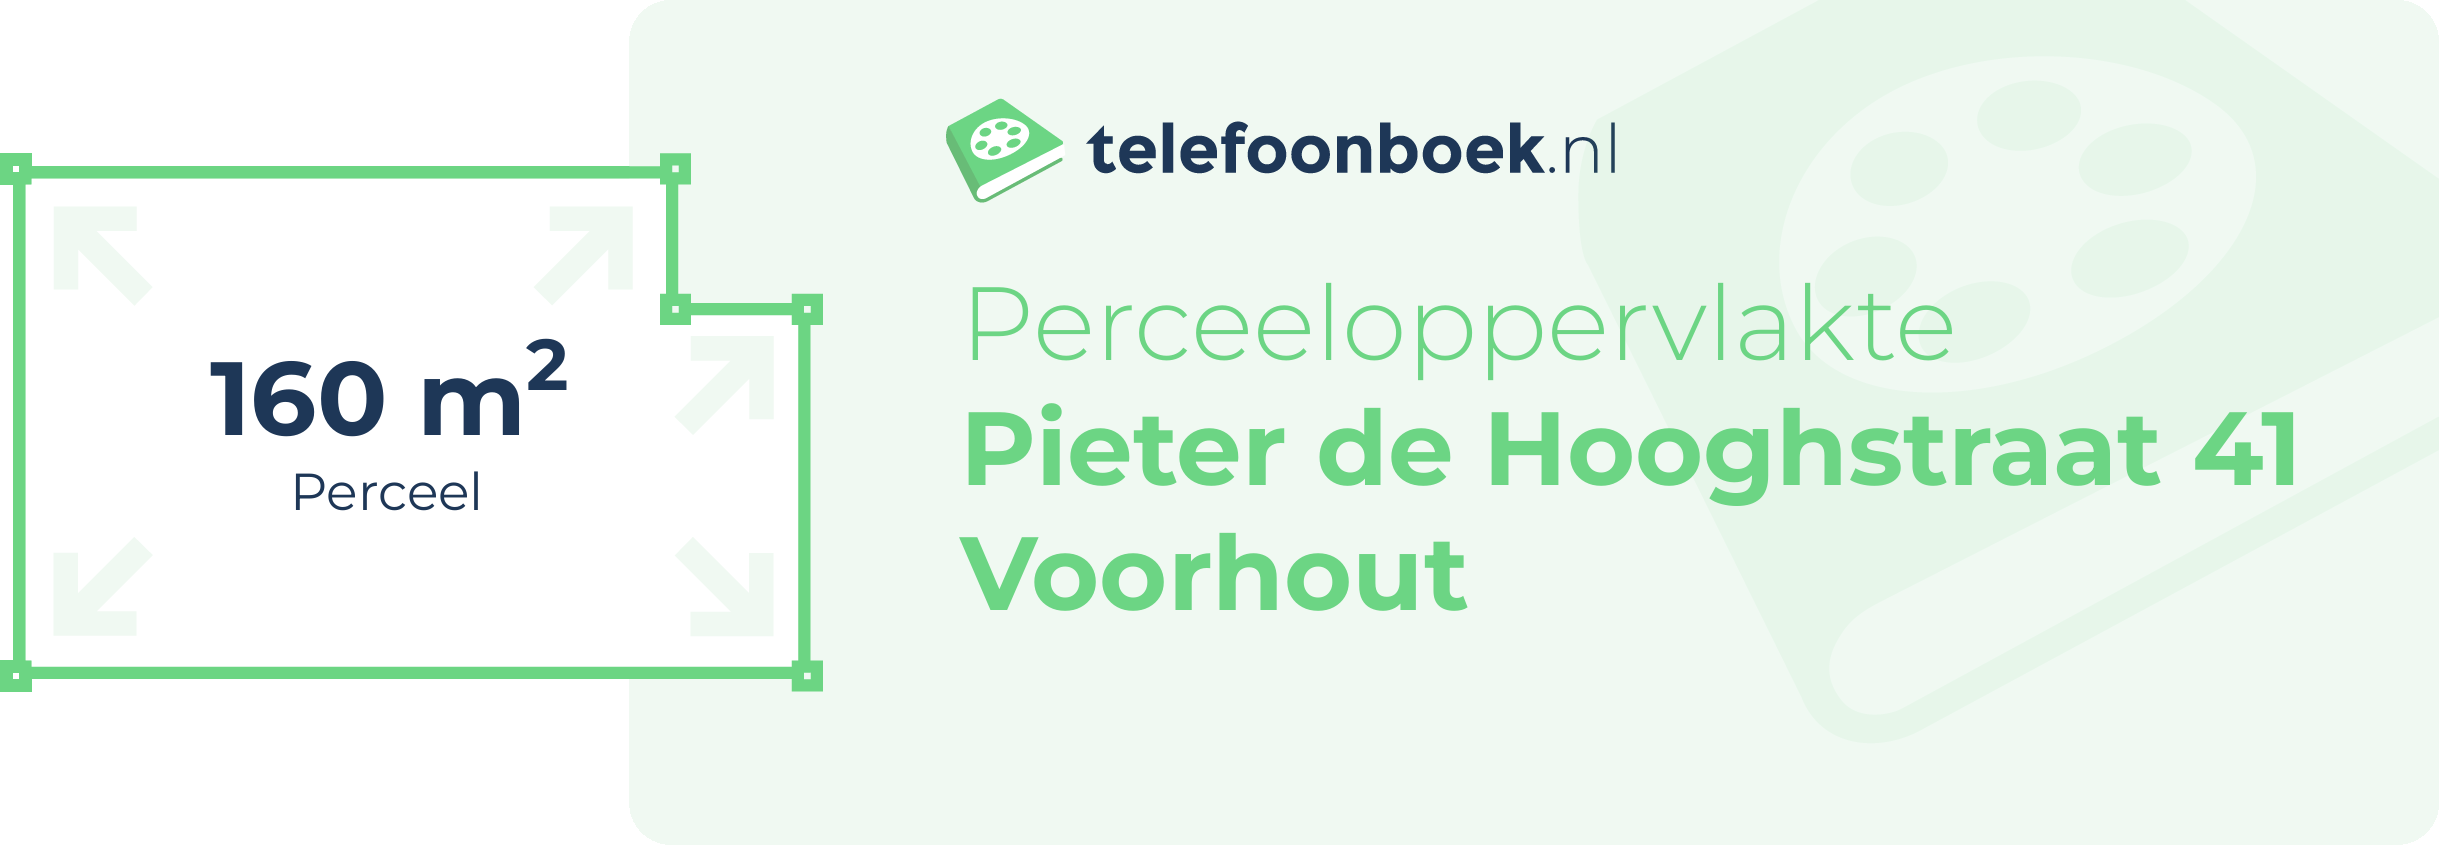 Perceeloppervlakte Pieter De Hooghstraat 41 Voorhout